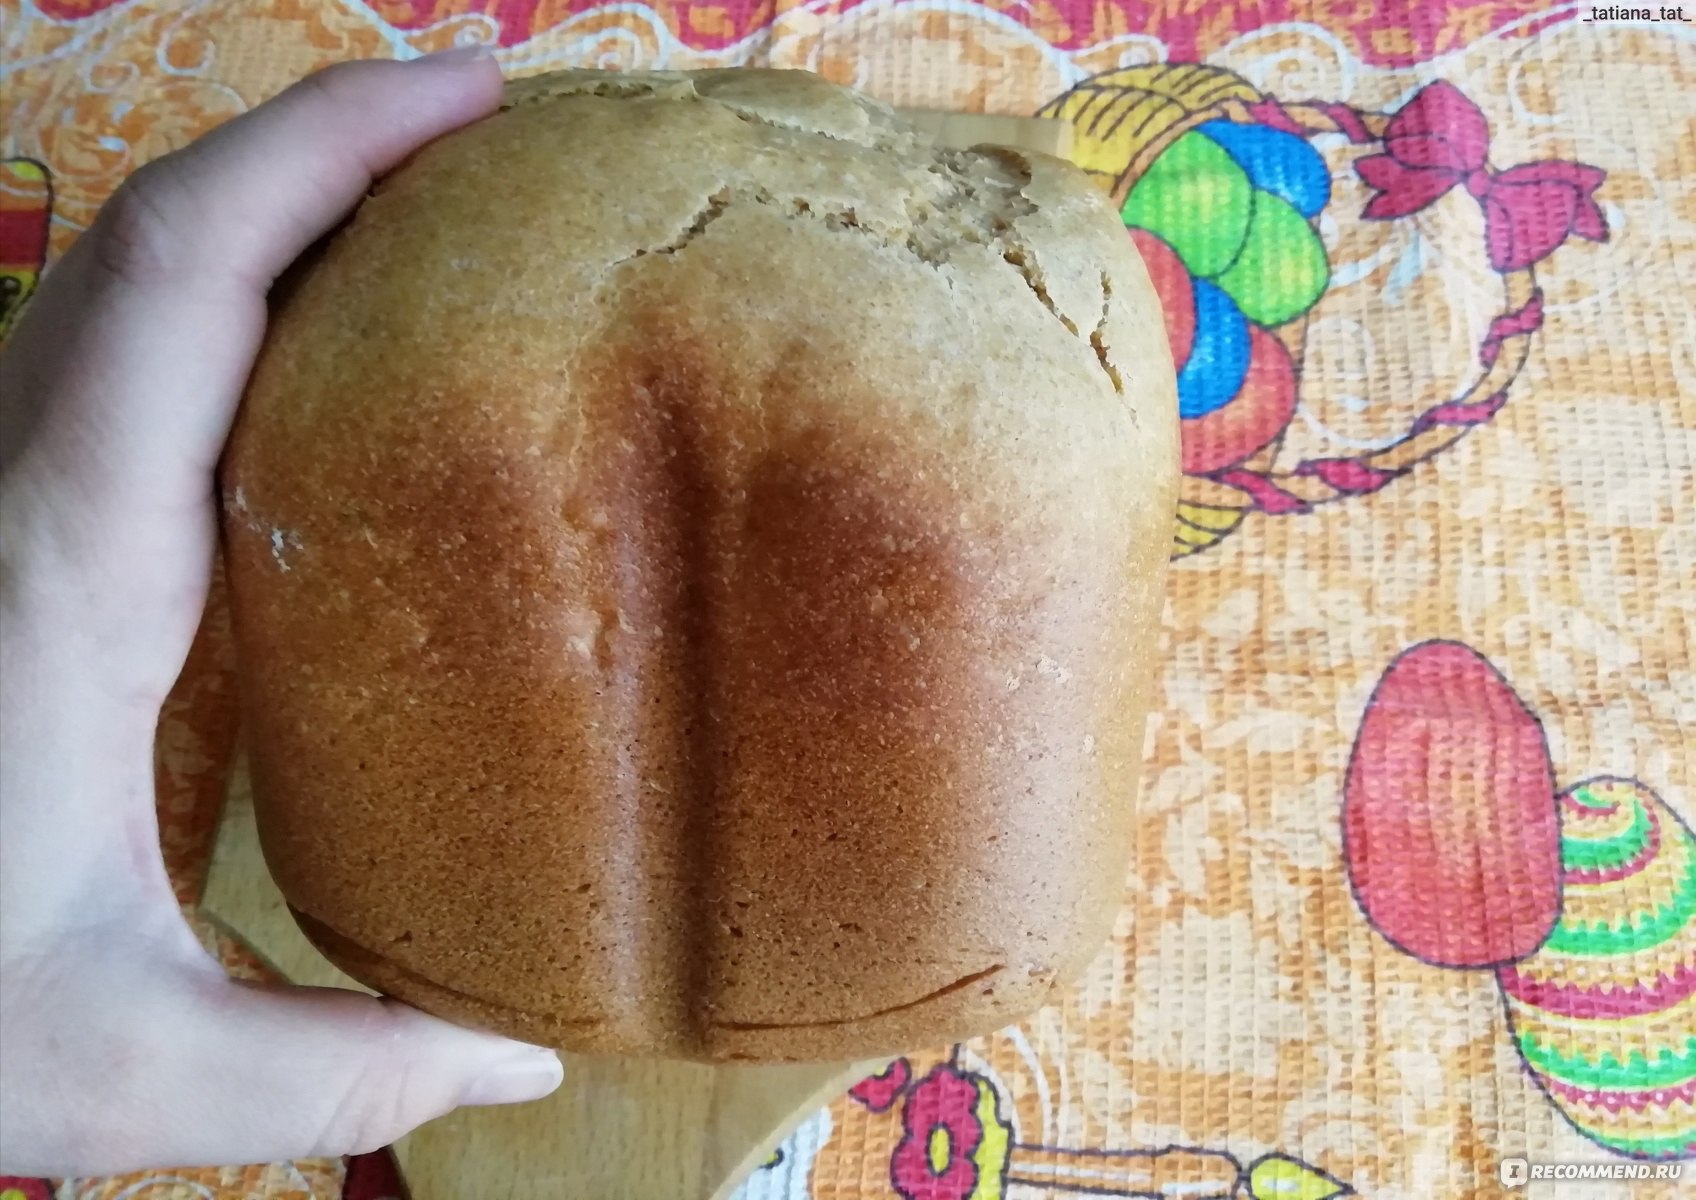 Хлебопечка горенье тесто. Хлебопечка bm910wii. Как пользоваться хлебопечкой. Кекс в хлебопечке горение bm910wii рецепты. Пасхальный кулич в хлебопечке горение bm900w.